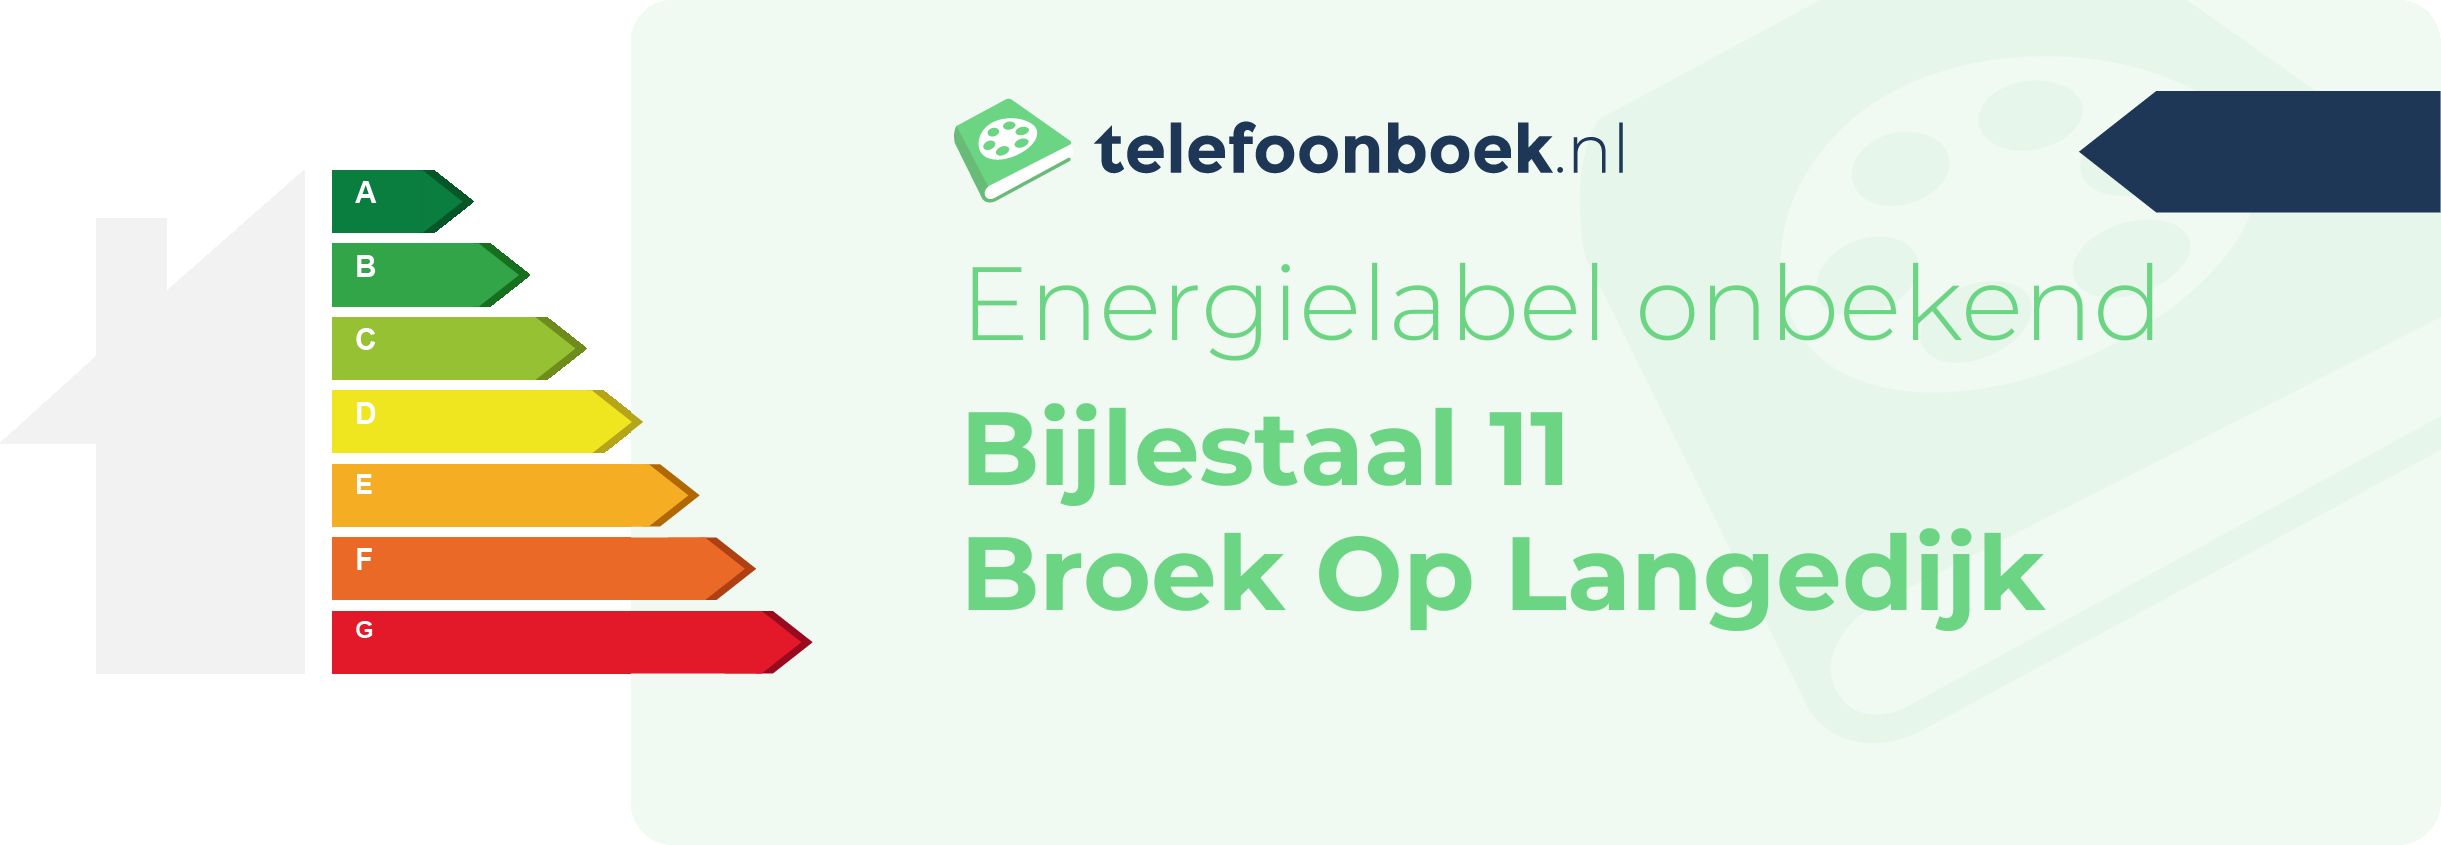 Energielabel Bijlestaal 11 Broek Op Langedijk